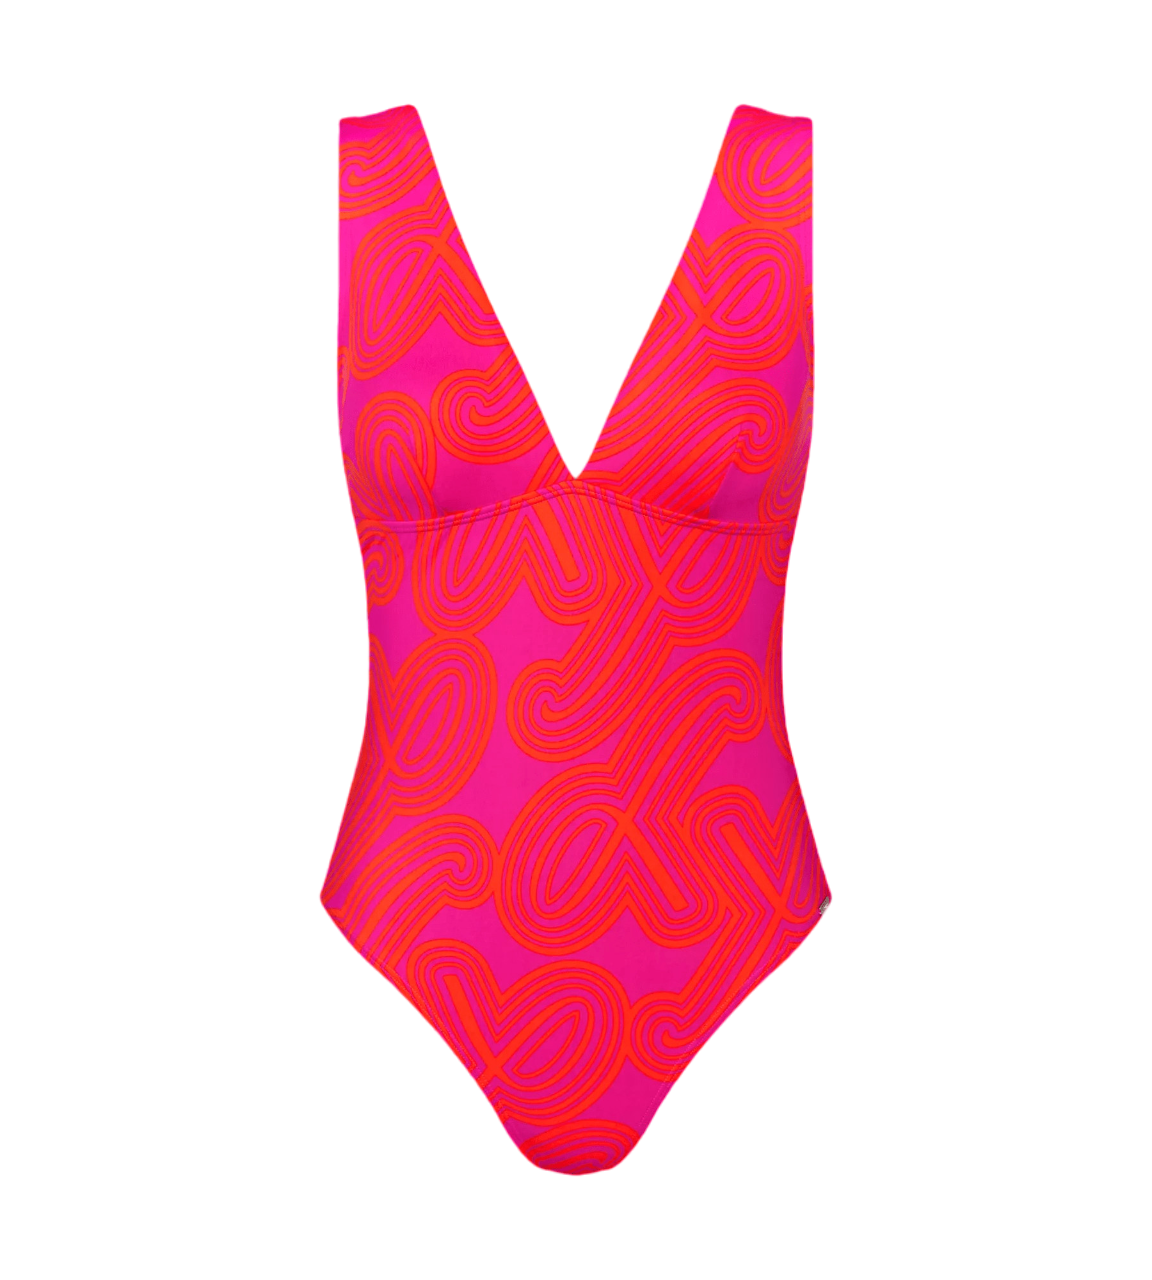 Dámské jednodílné plavky Flex Smart Summer OP 05 pt - PINK - růžové M019 - TRIUMPH PINK 01